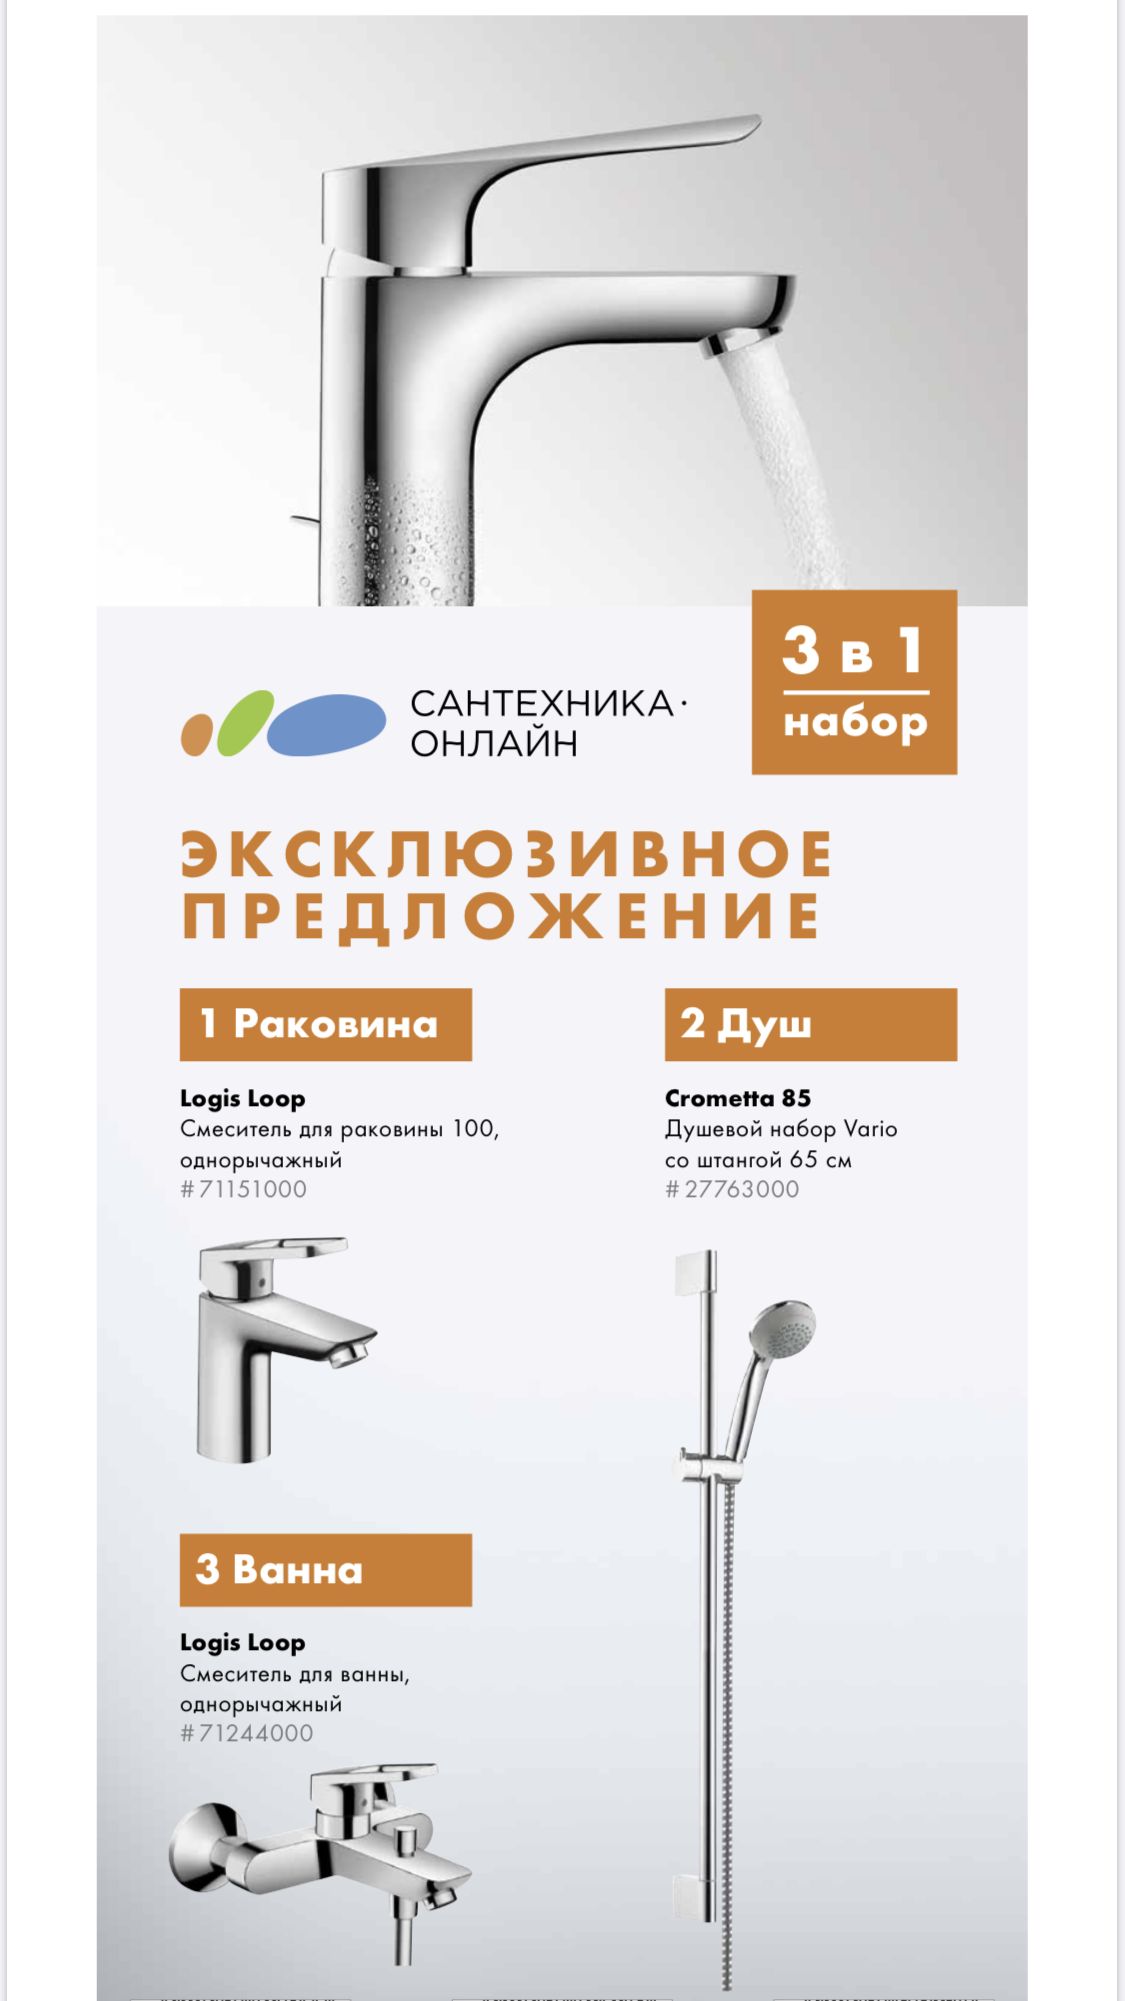 **Набор смесителей для ванны Logis Loop САНТЕХНИКА-ОНЛАЙН (71151000+71244000+27763000)